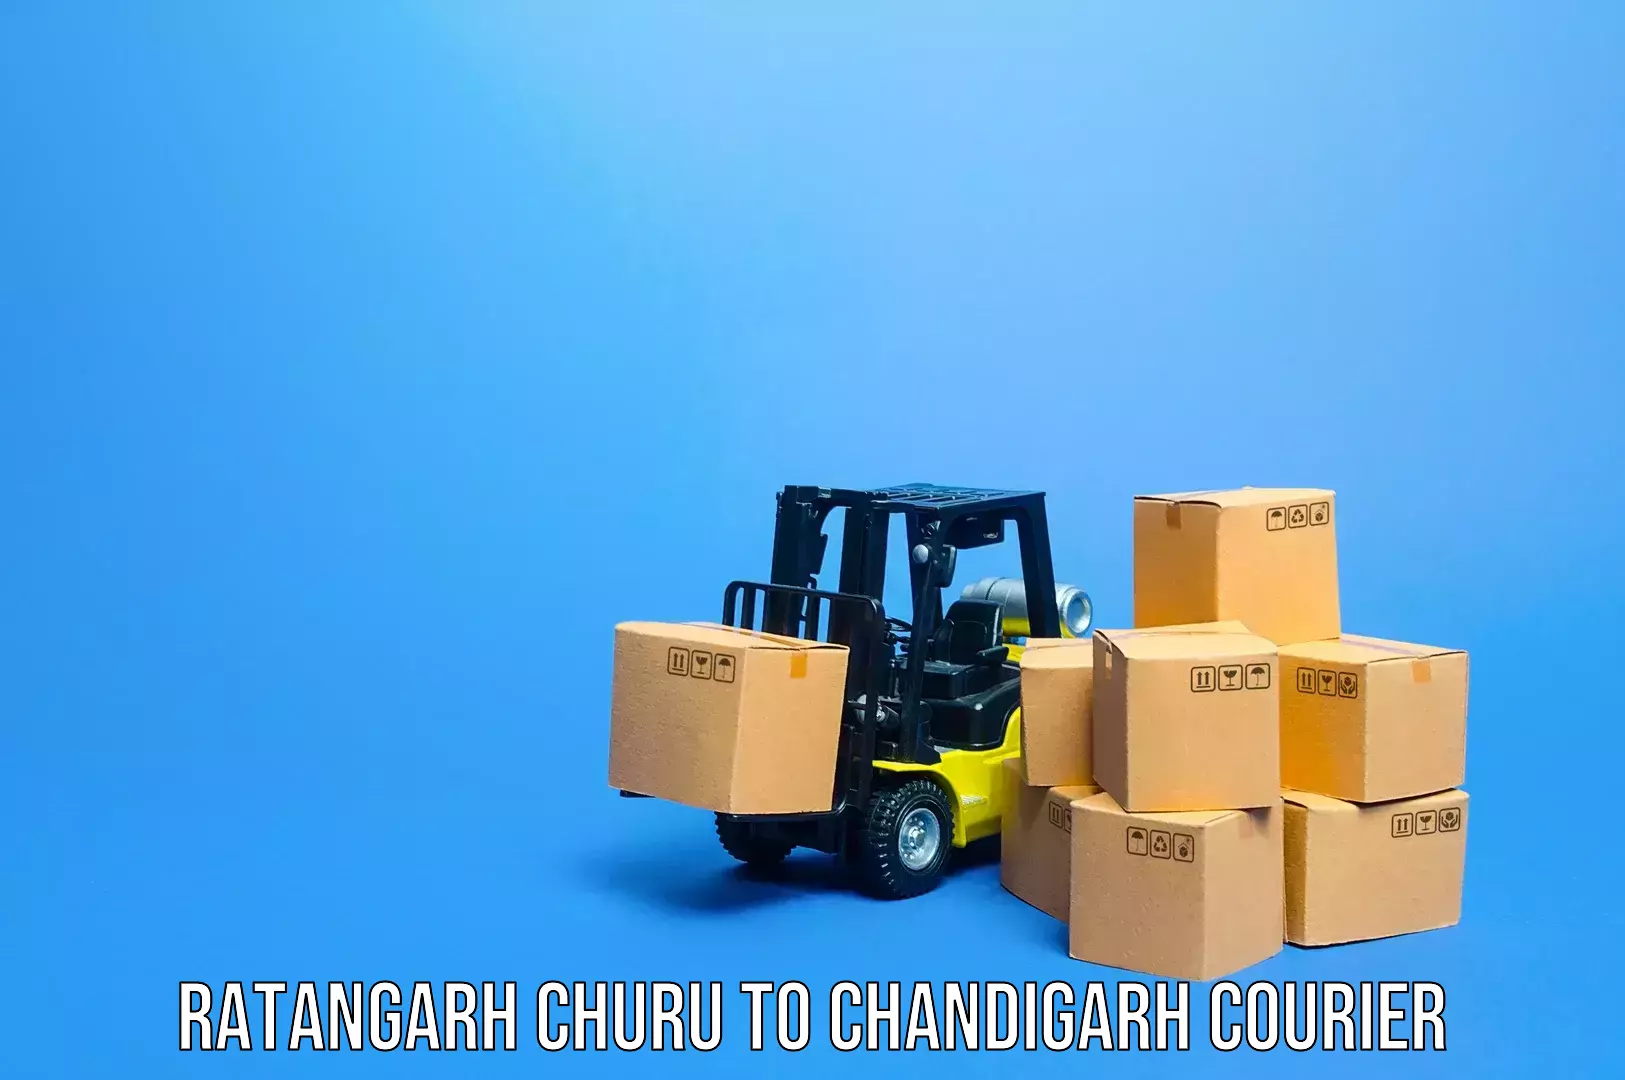 Luggage transport consultancy Ratangarh Churu to Chandigarh